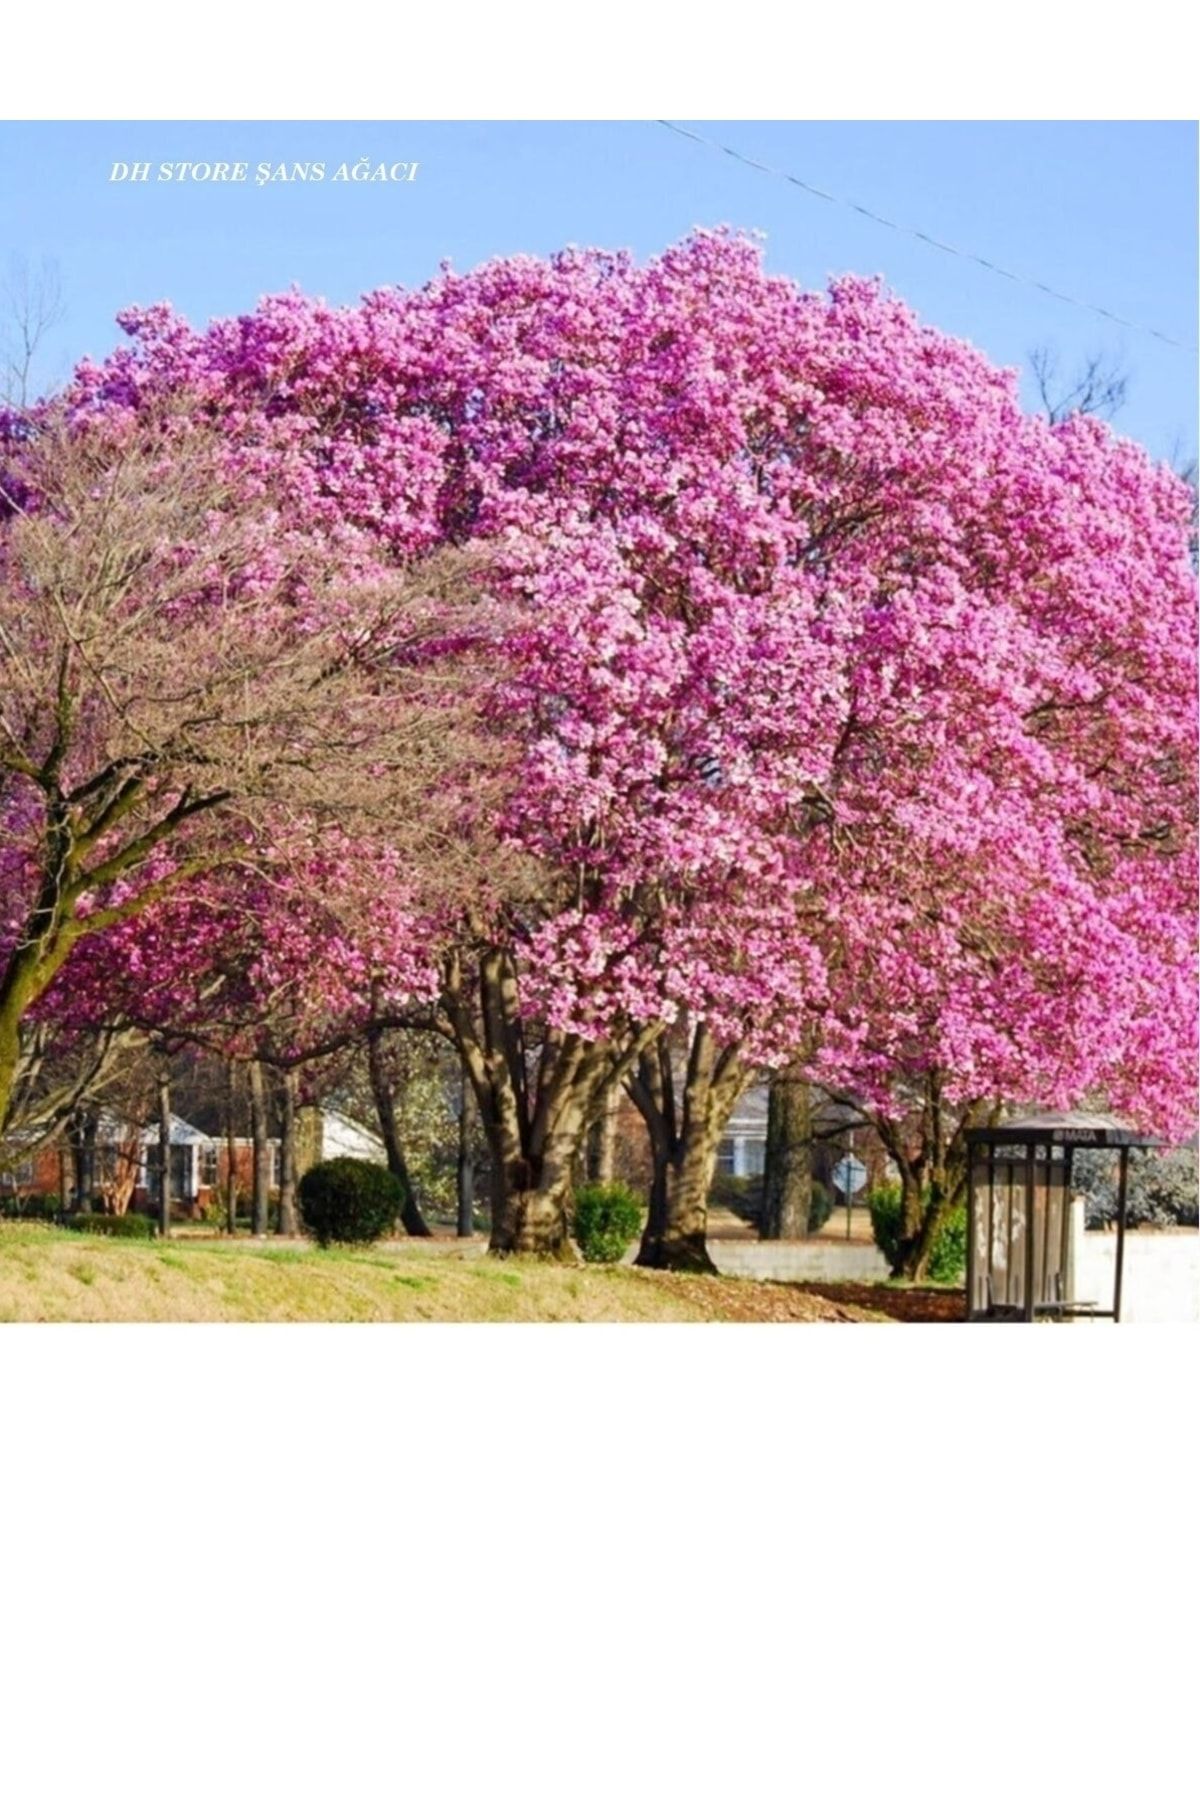 DH STORE Şans Ağacı Pembe Çiçekli Kokulu Japon Çiçeği Fidanı (TÜPLÜ BOL ÇİÇEKLİ)